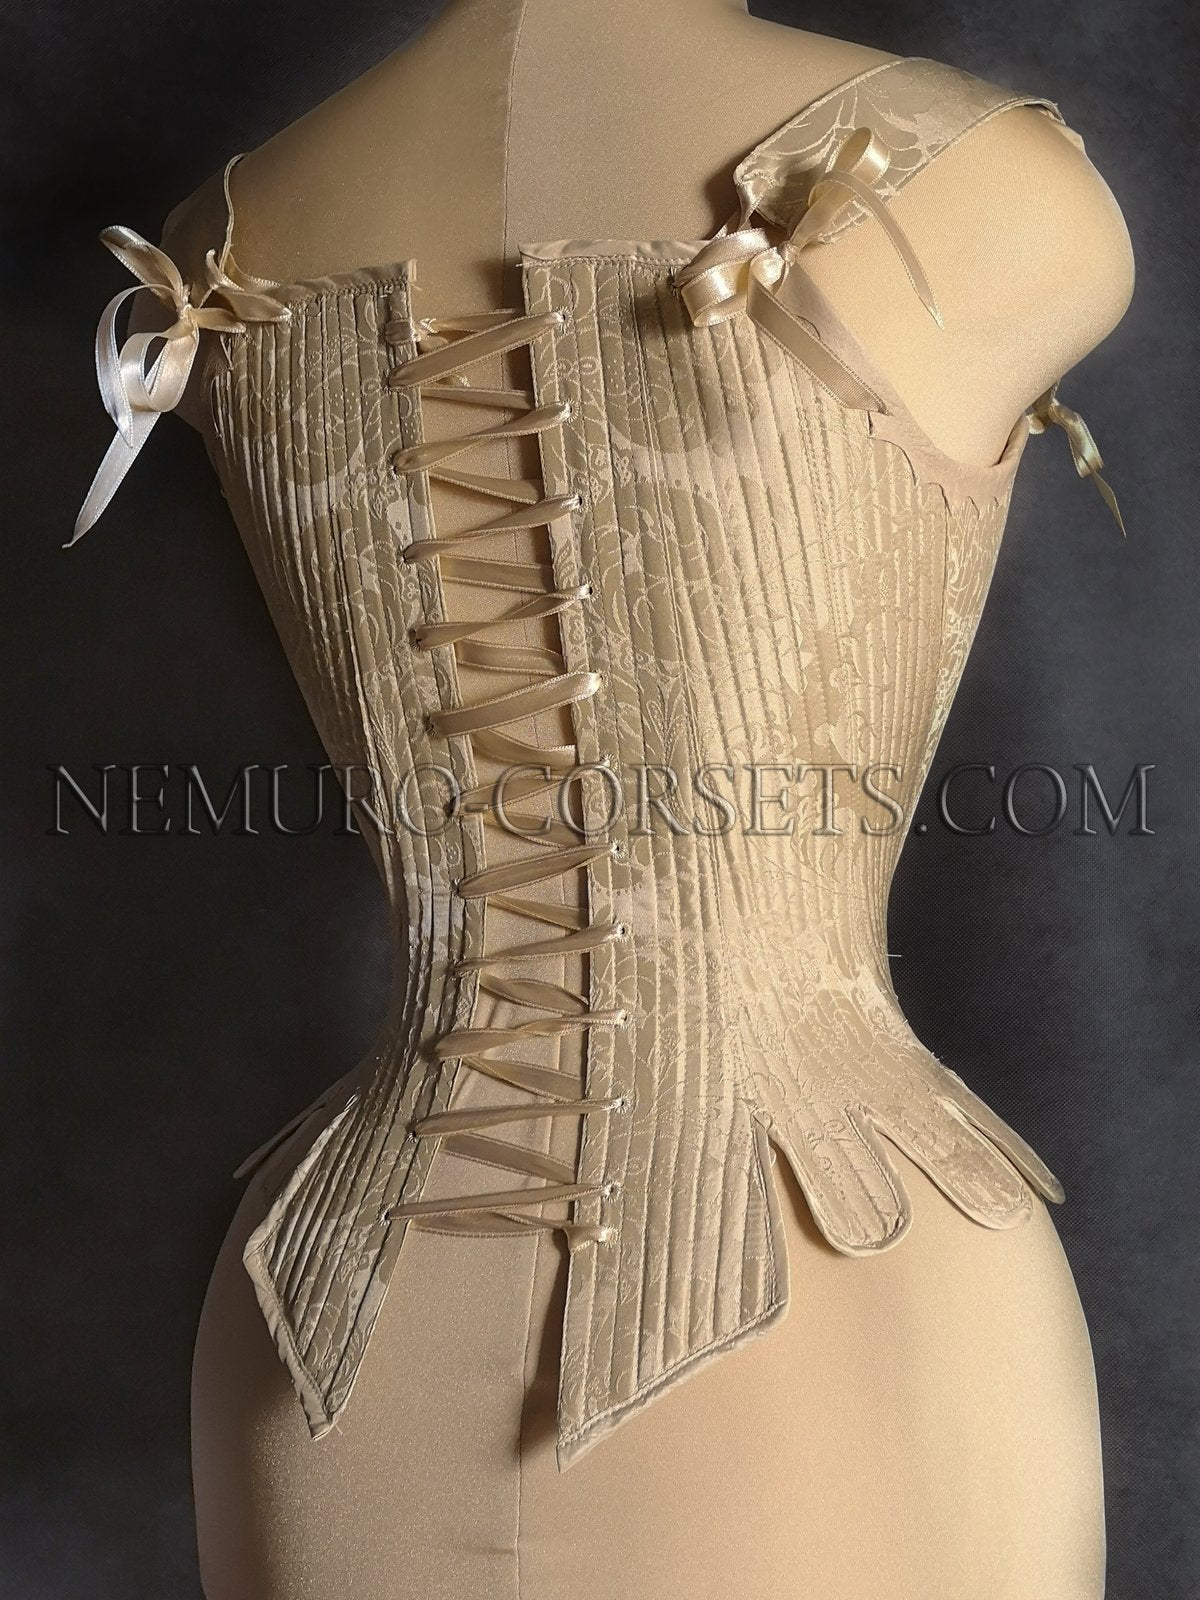 https://nemuro-corsets.com/cdn/shop/products/IMG_20201024_171052-2_1024x1024@2x.jpg?v=1605793862